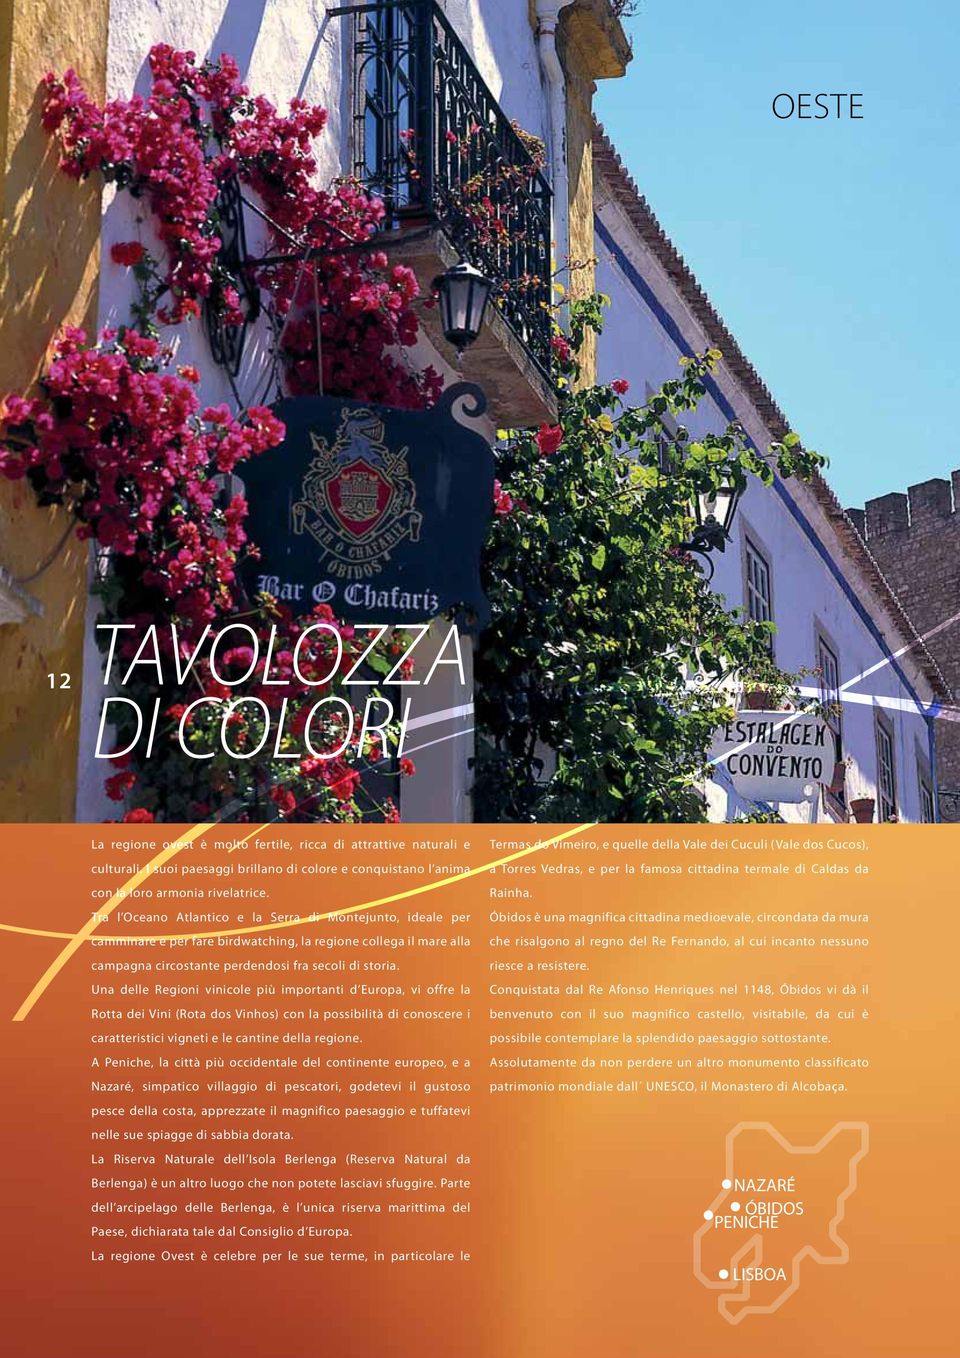 Una delle Regioni vinicole più importanti d Europa, vi offre la Rotta dei Vini (Rota dos Vinhos) con la possibilità di conoscere i caratteristici vigneti e le cantine della regione.